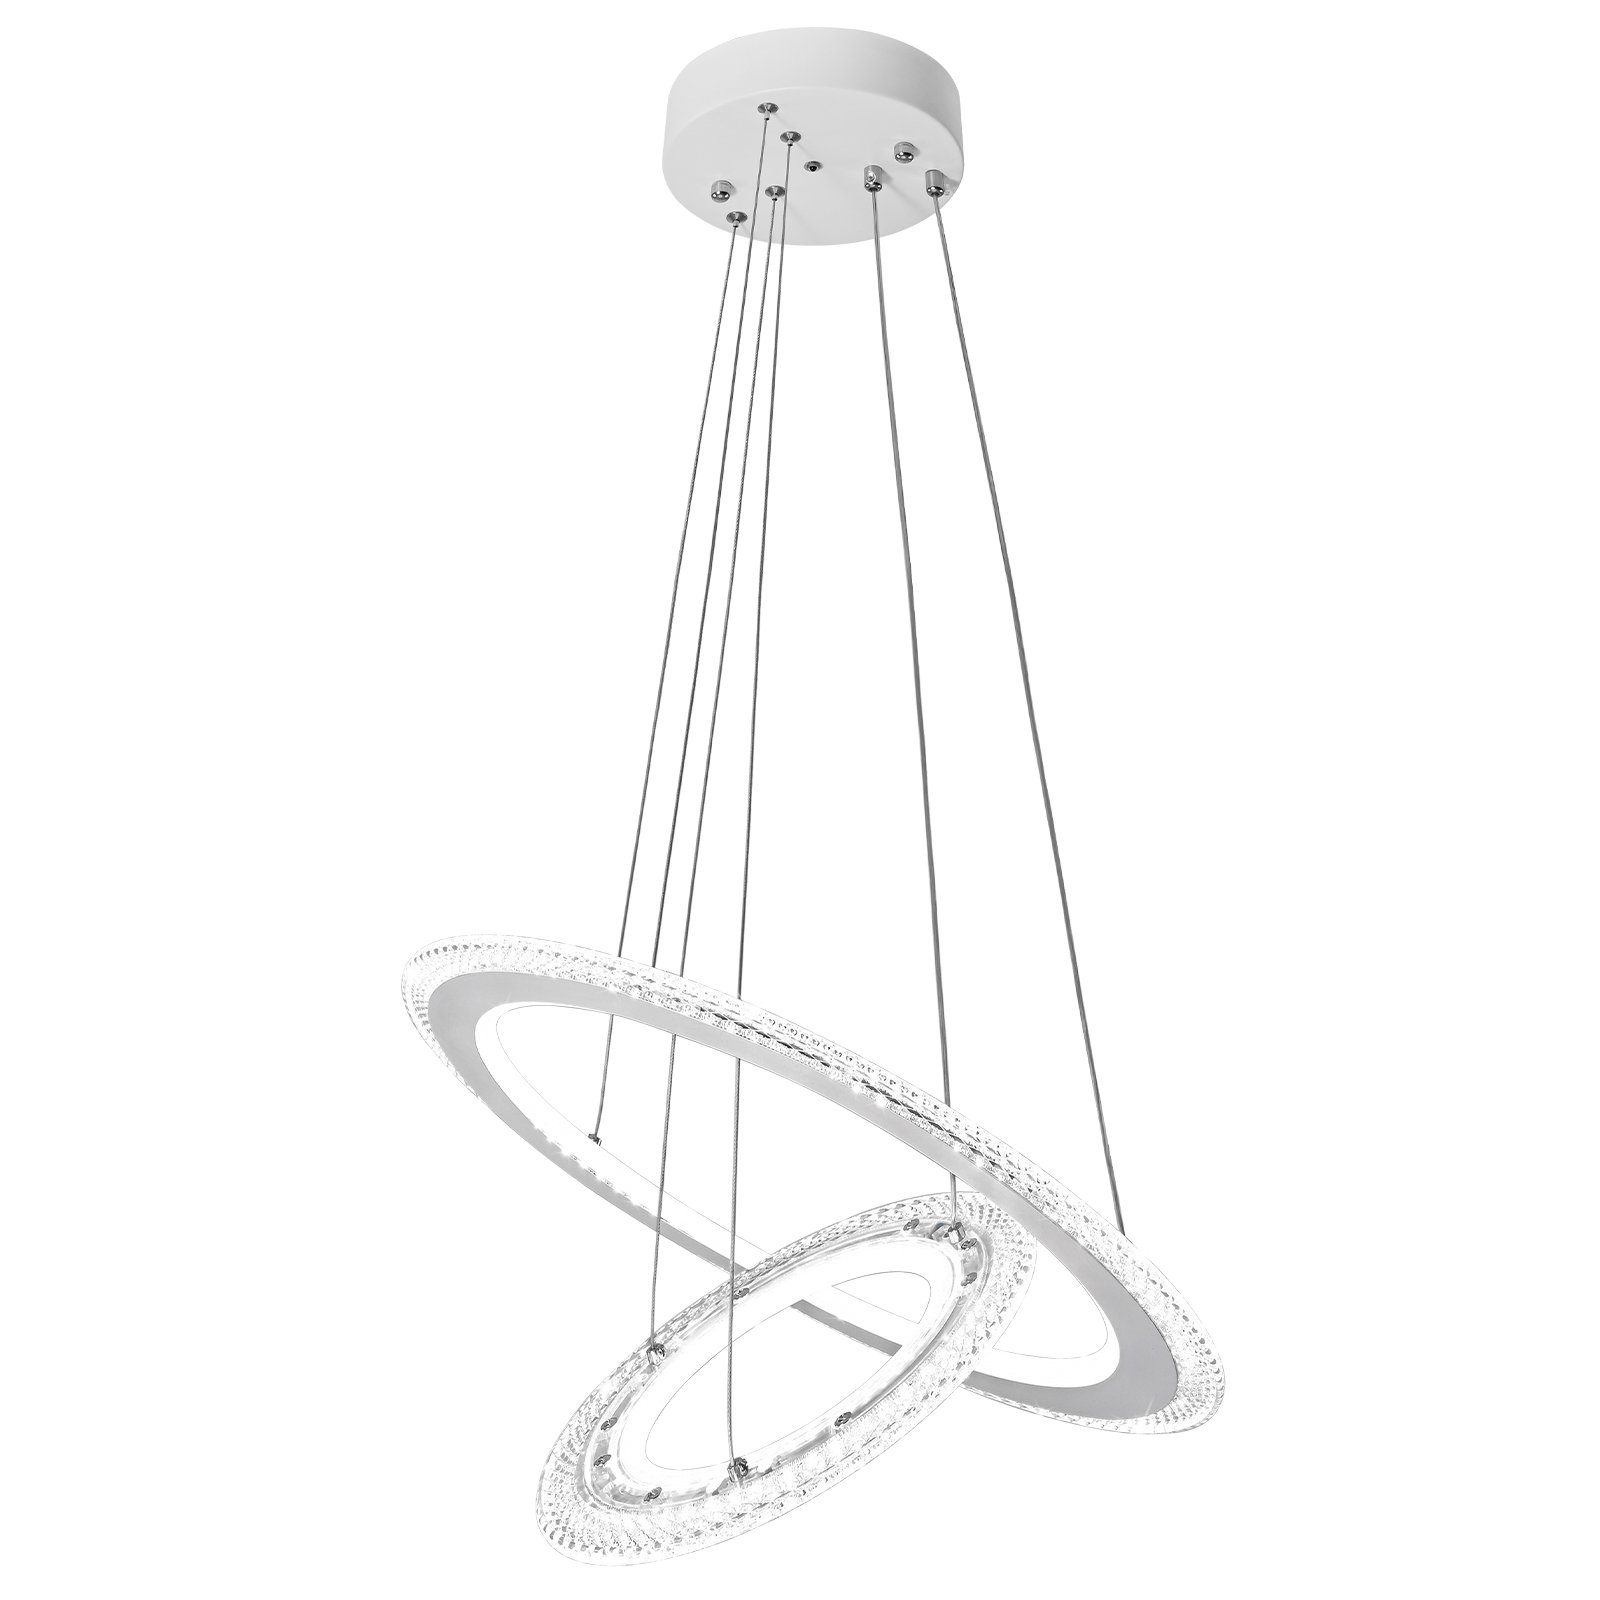 UISEBRT LED Pendelleuchte Hängeleuchte Modern Kristall Kronleuchter Hängelampe Höhenverstellbar, 2/3 Ring Deckenlampe Acryl Leuchte für Wohnzimmer Kaltweiß ohne Fernbedienung